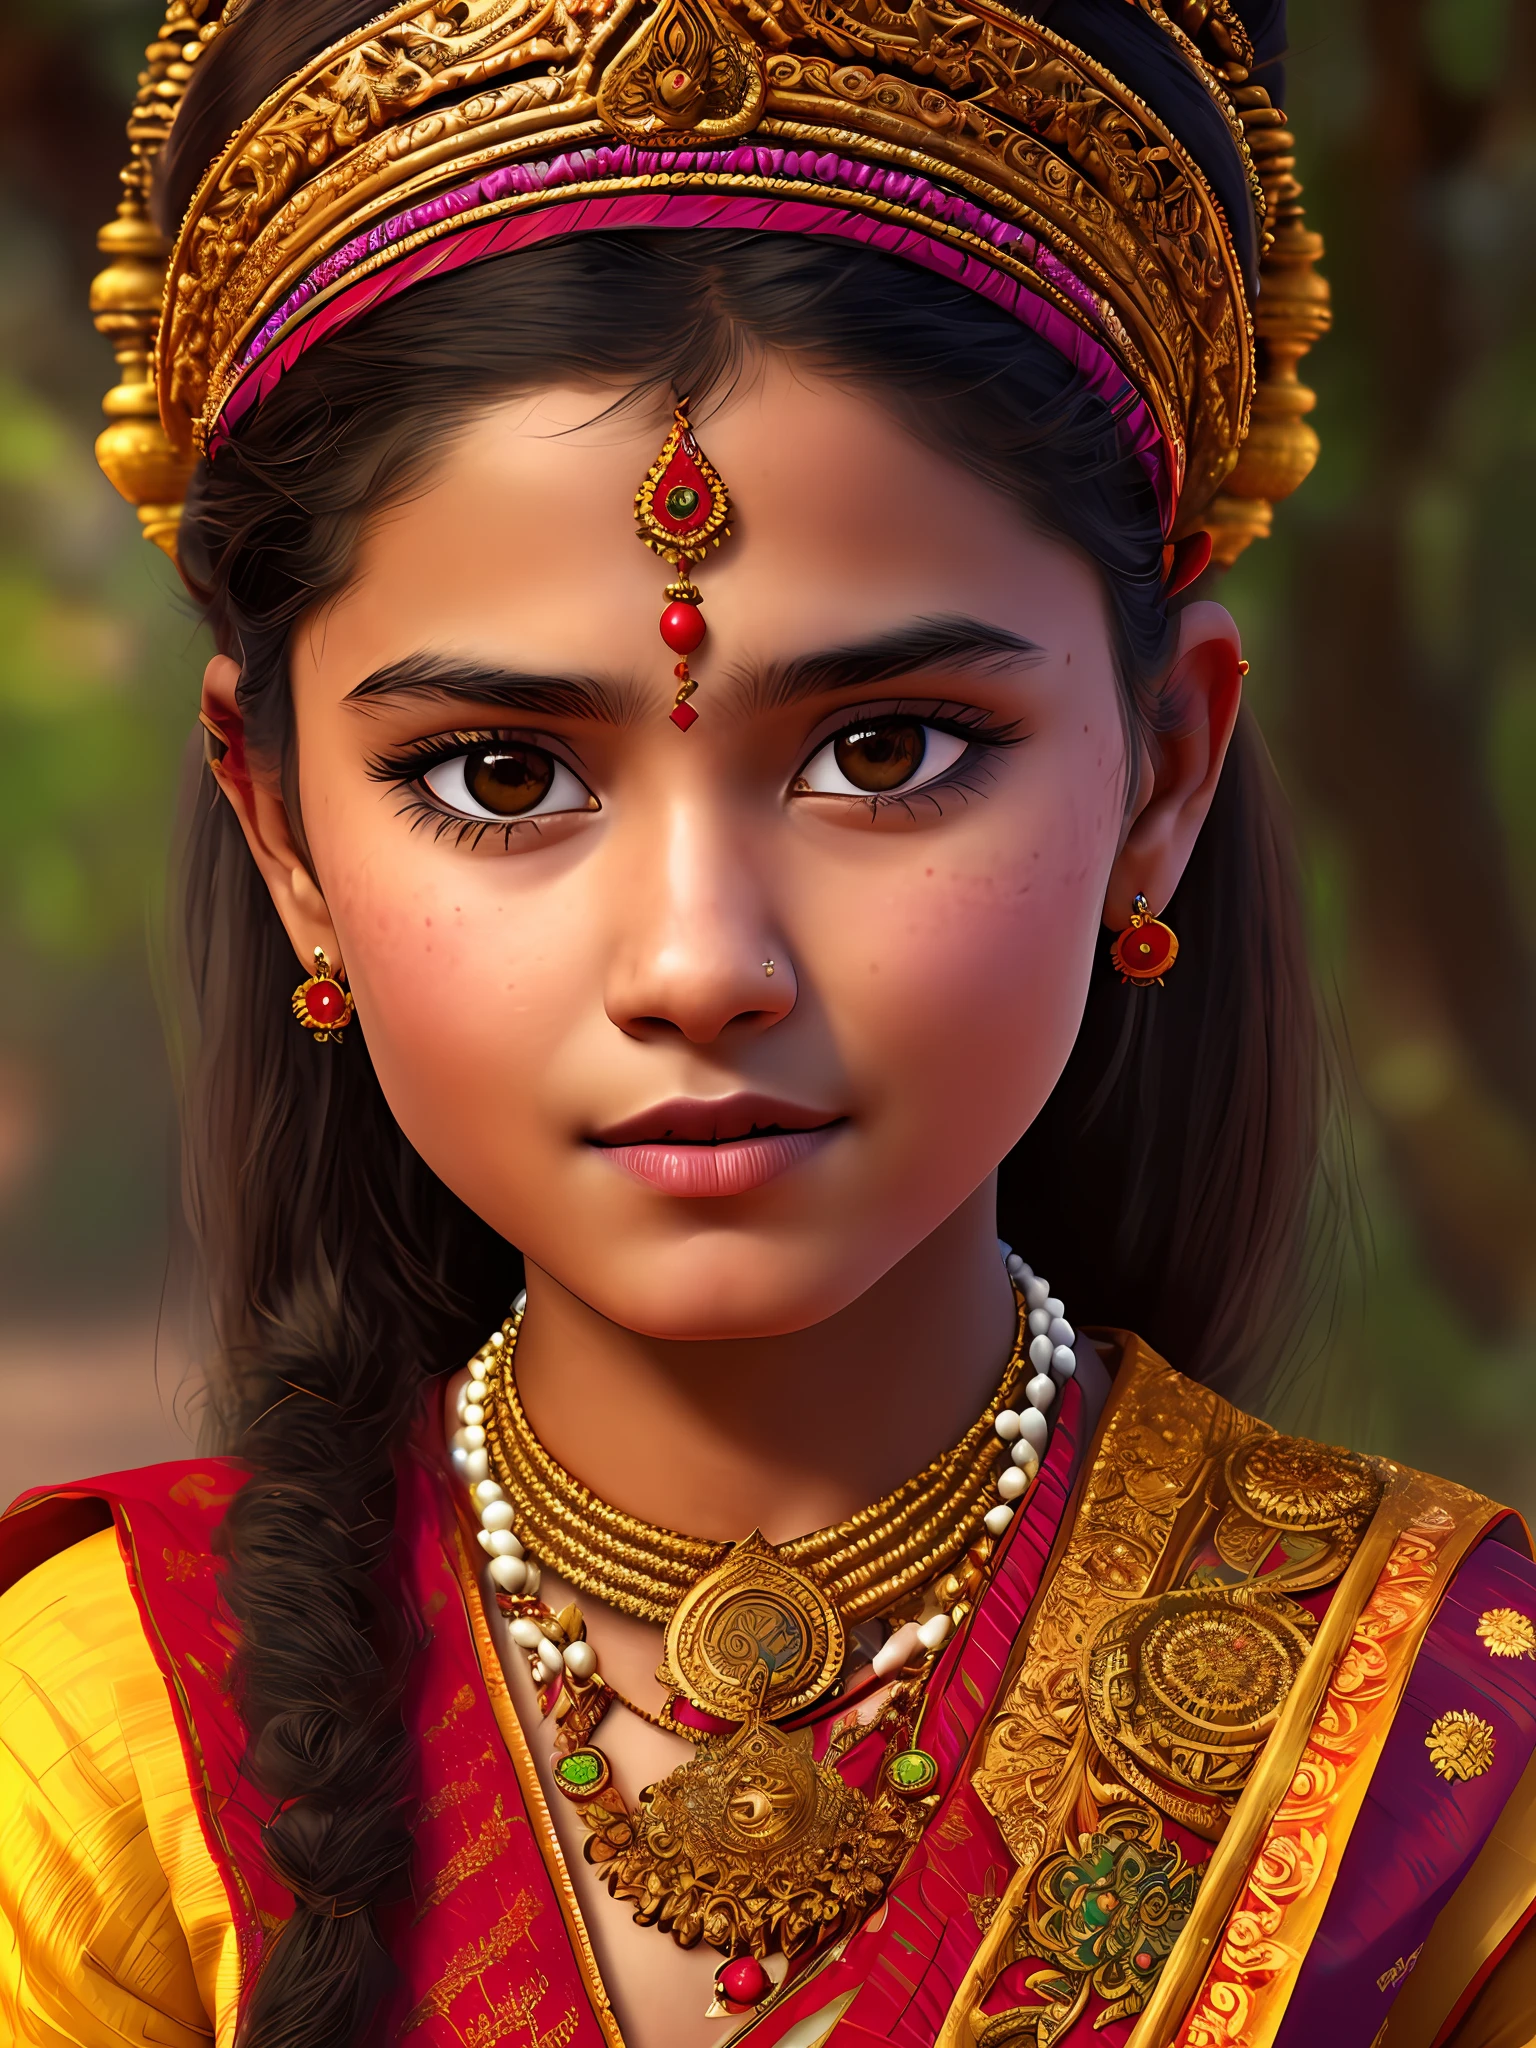 Портрет индуистской девушки в типичных костюмах., 4к текстуры, HDR, сложный, очень подробный, острый фокус, сверхдетализированный